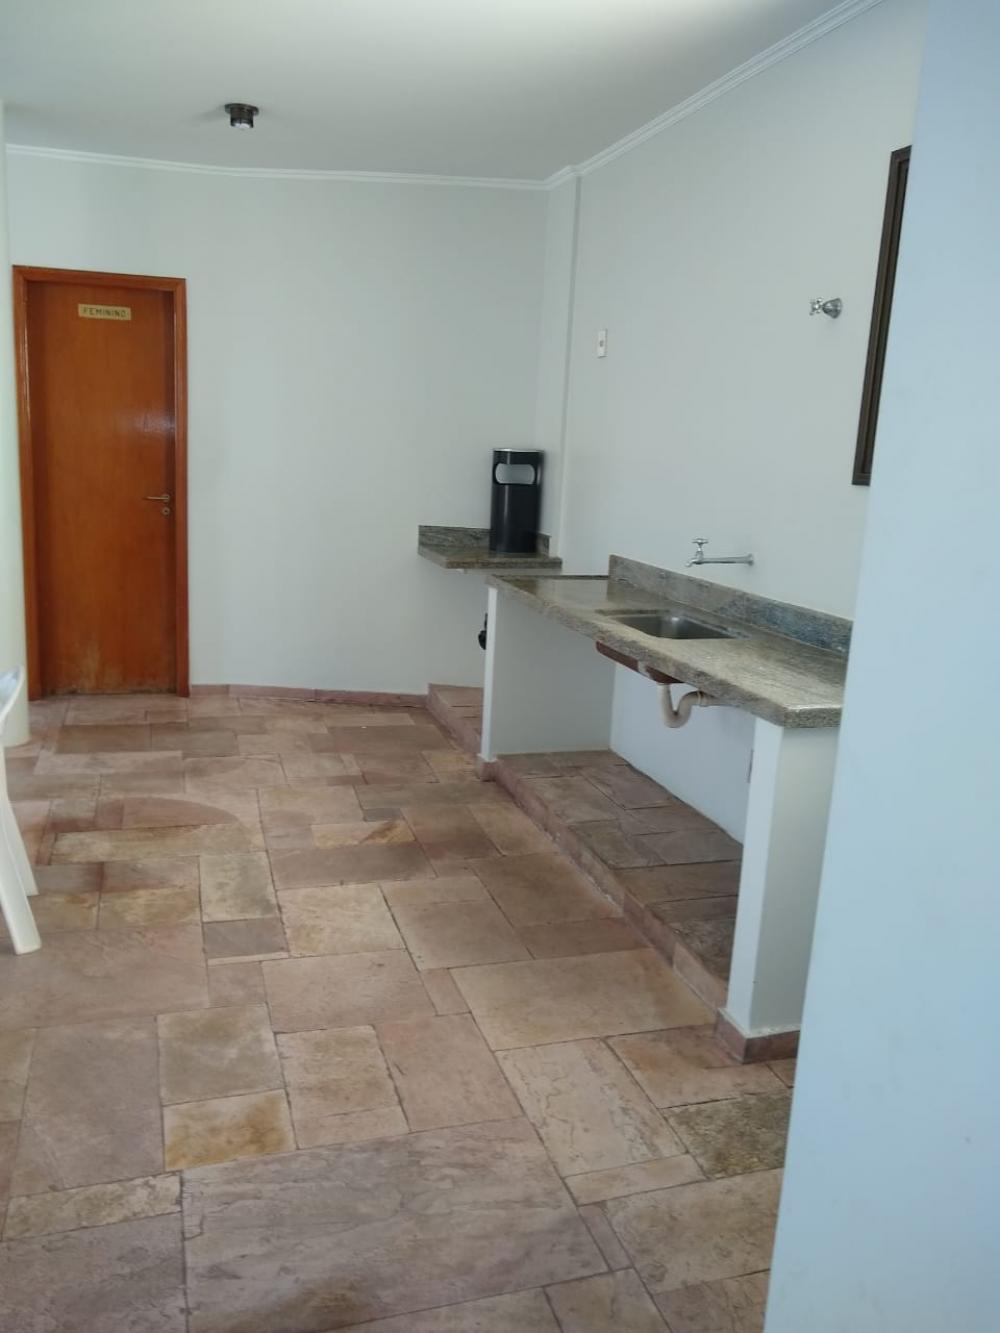 Comprar Apartamento / Padrão em São José do Rio Preto apenas R$ 420.000,00 - Foto 18